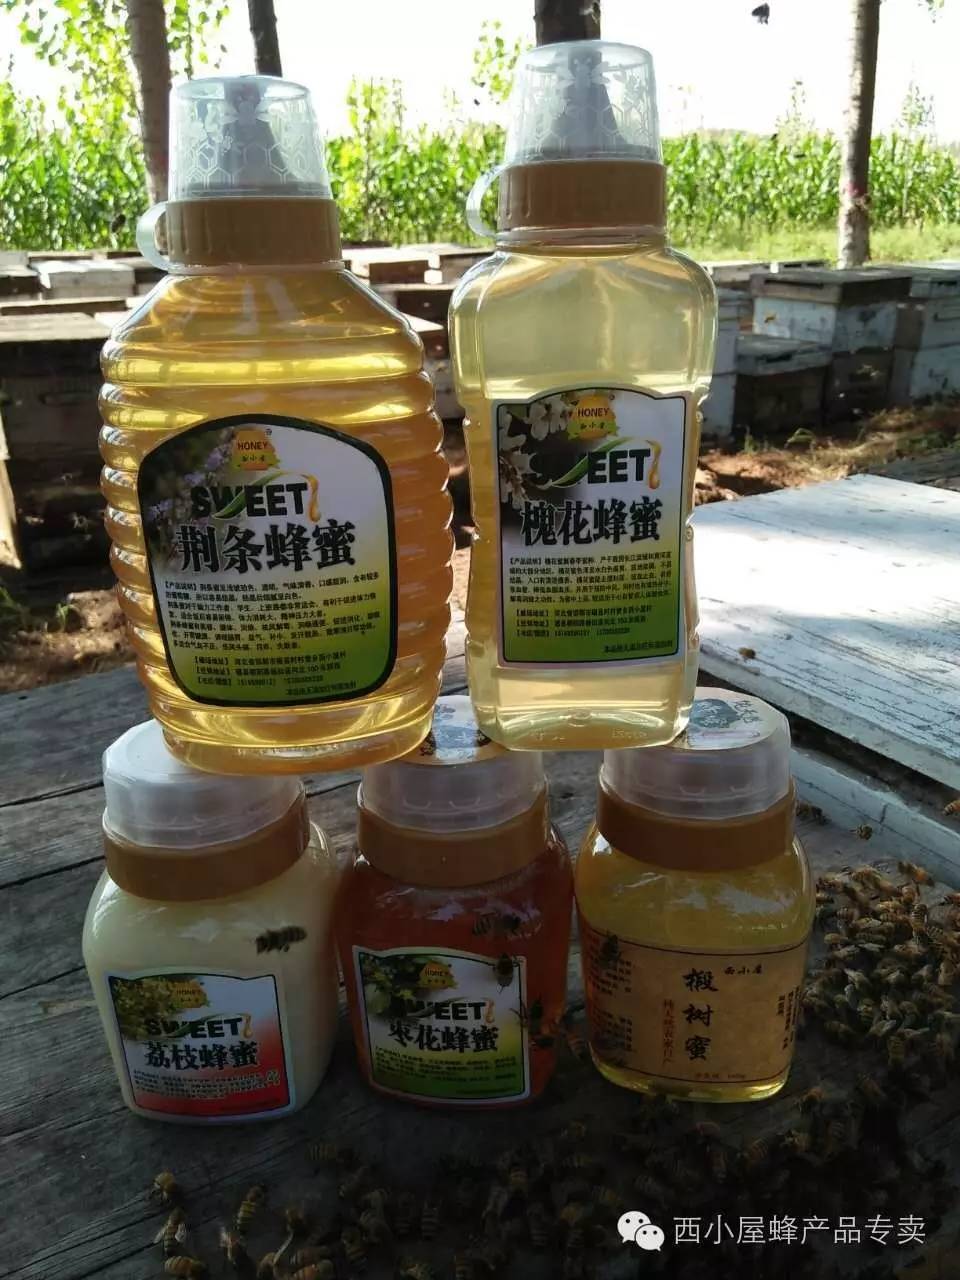 蜂蜜搭配什么好 冠生园蜂蜜西安代理 蜂蜜属于碱性还是酸性 蜂蜜密度计 蜂蜜加醋美容